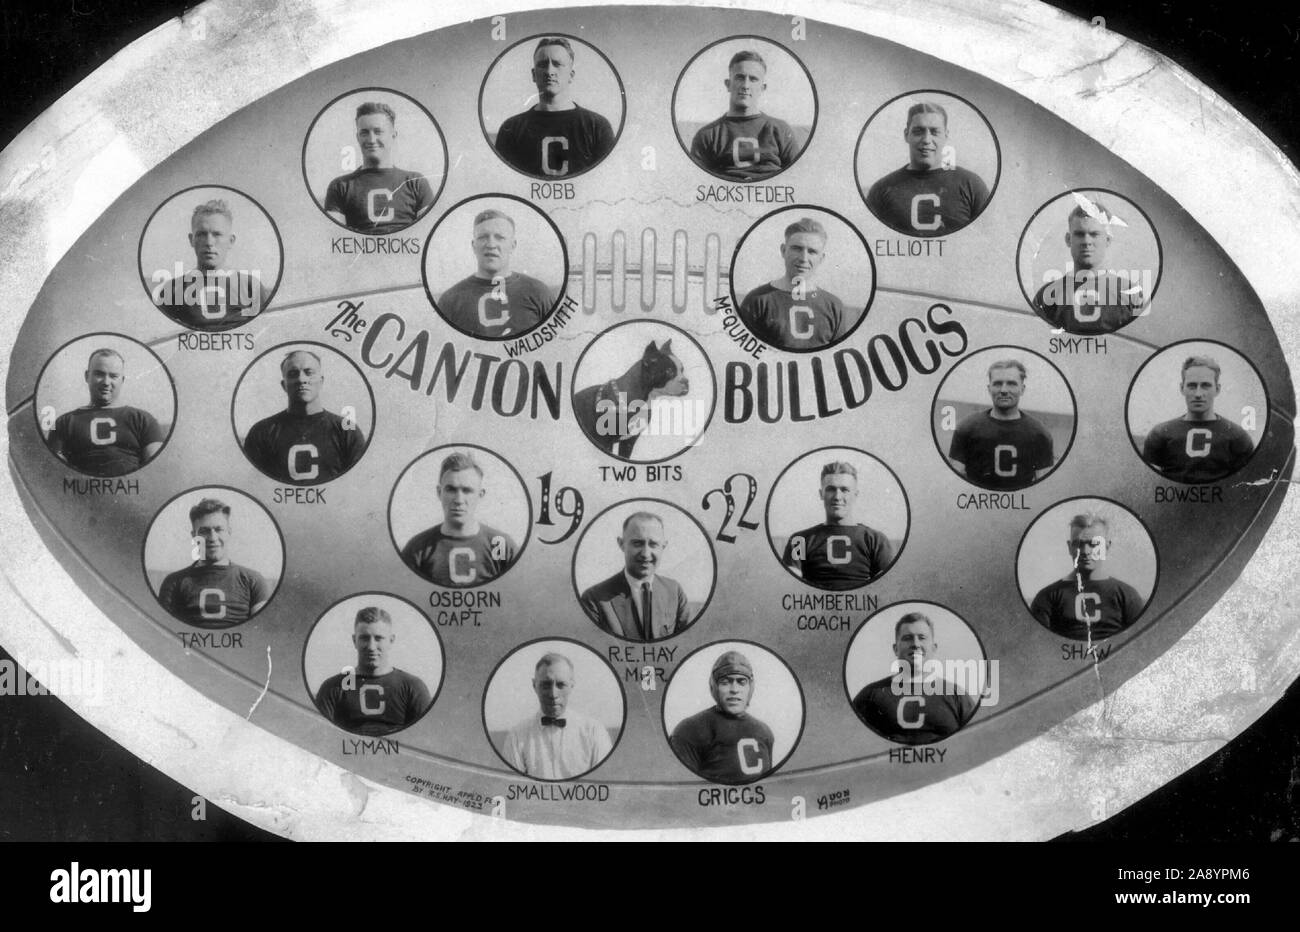 Une carte illustrant les Canton Bulldogs les joueurs de football, 1922 champions de la NFL. Banque D'Images